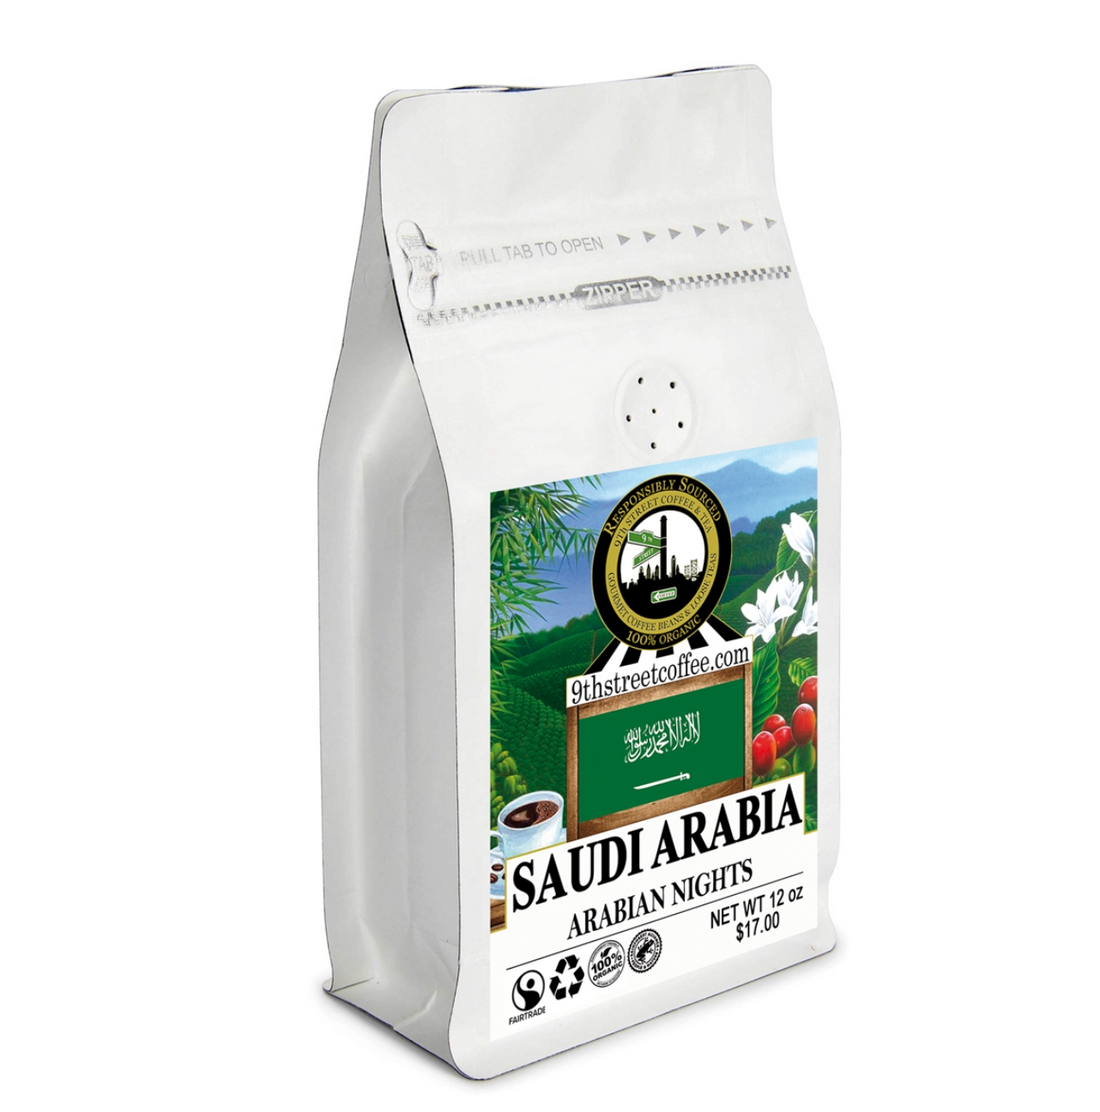 Organic Saudi Arabian Arabian Nights Coffee